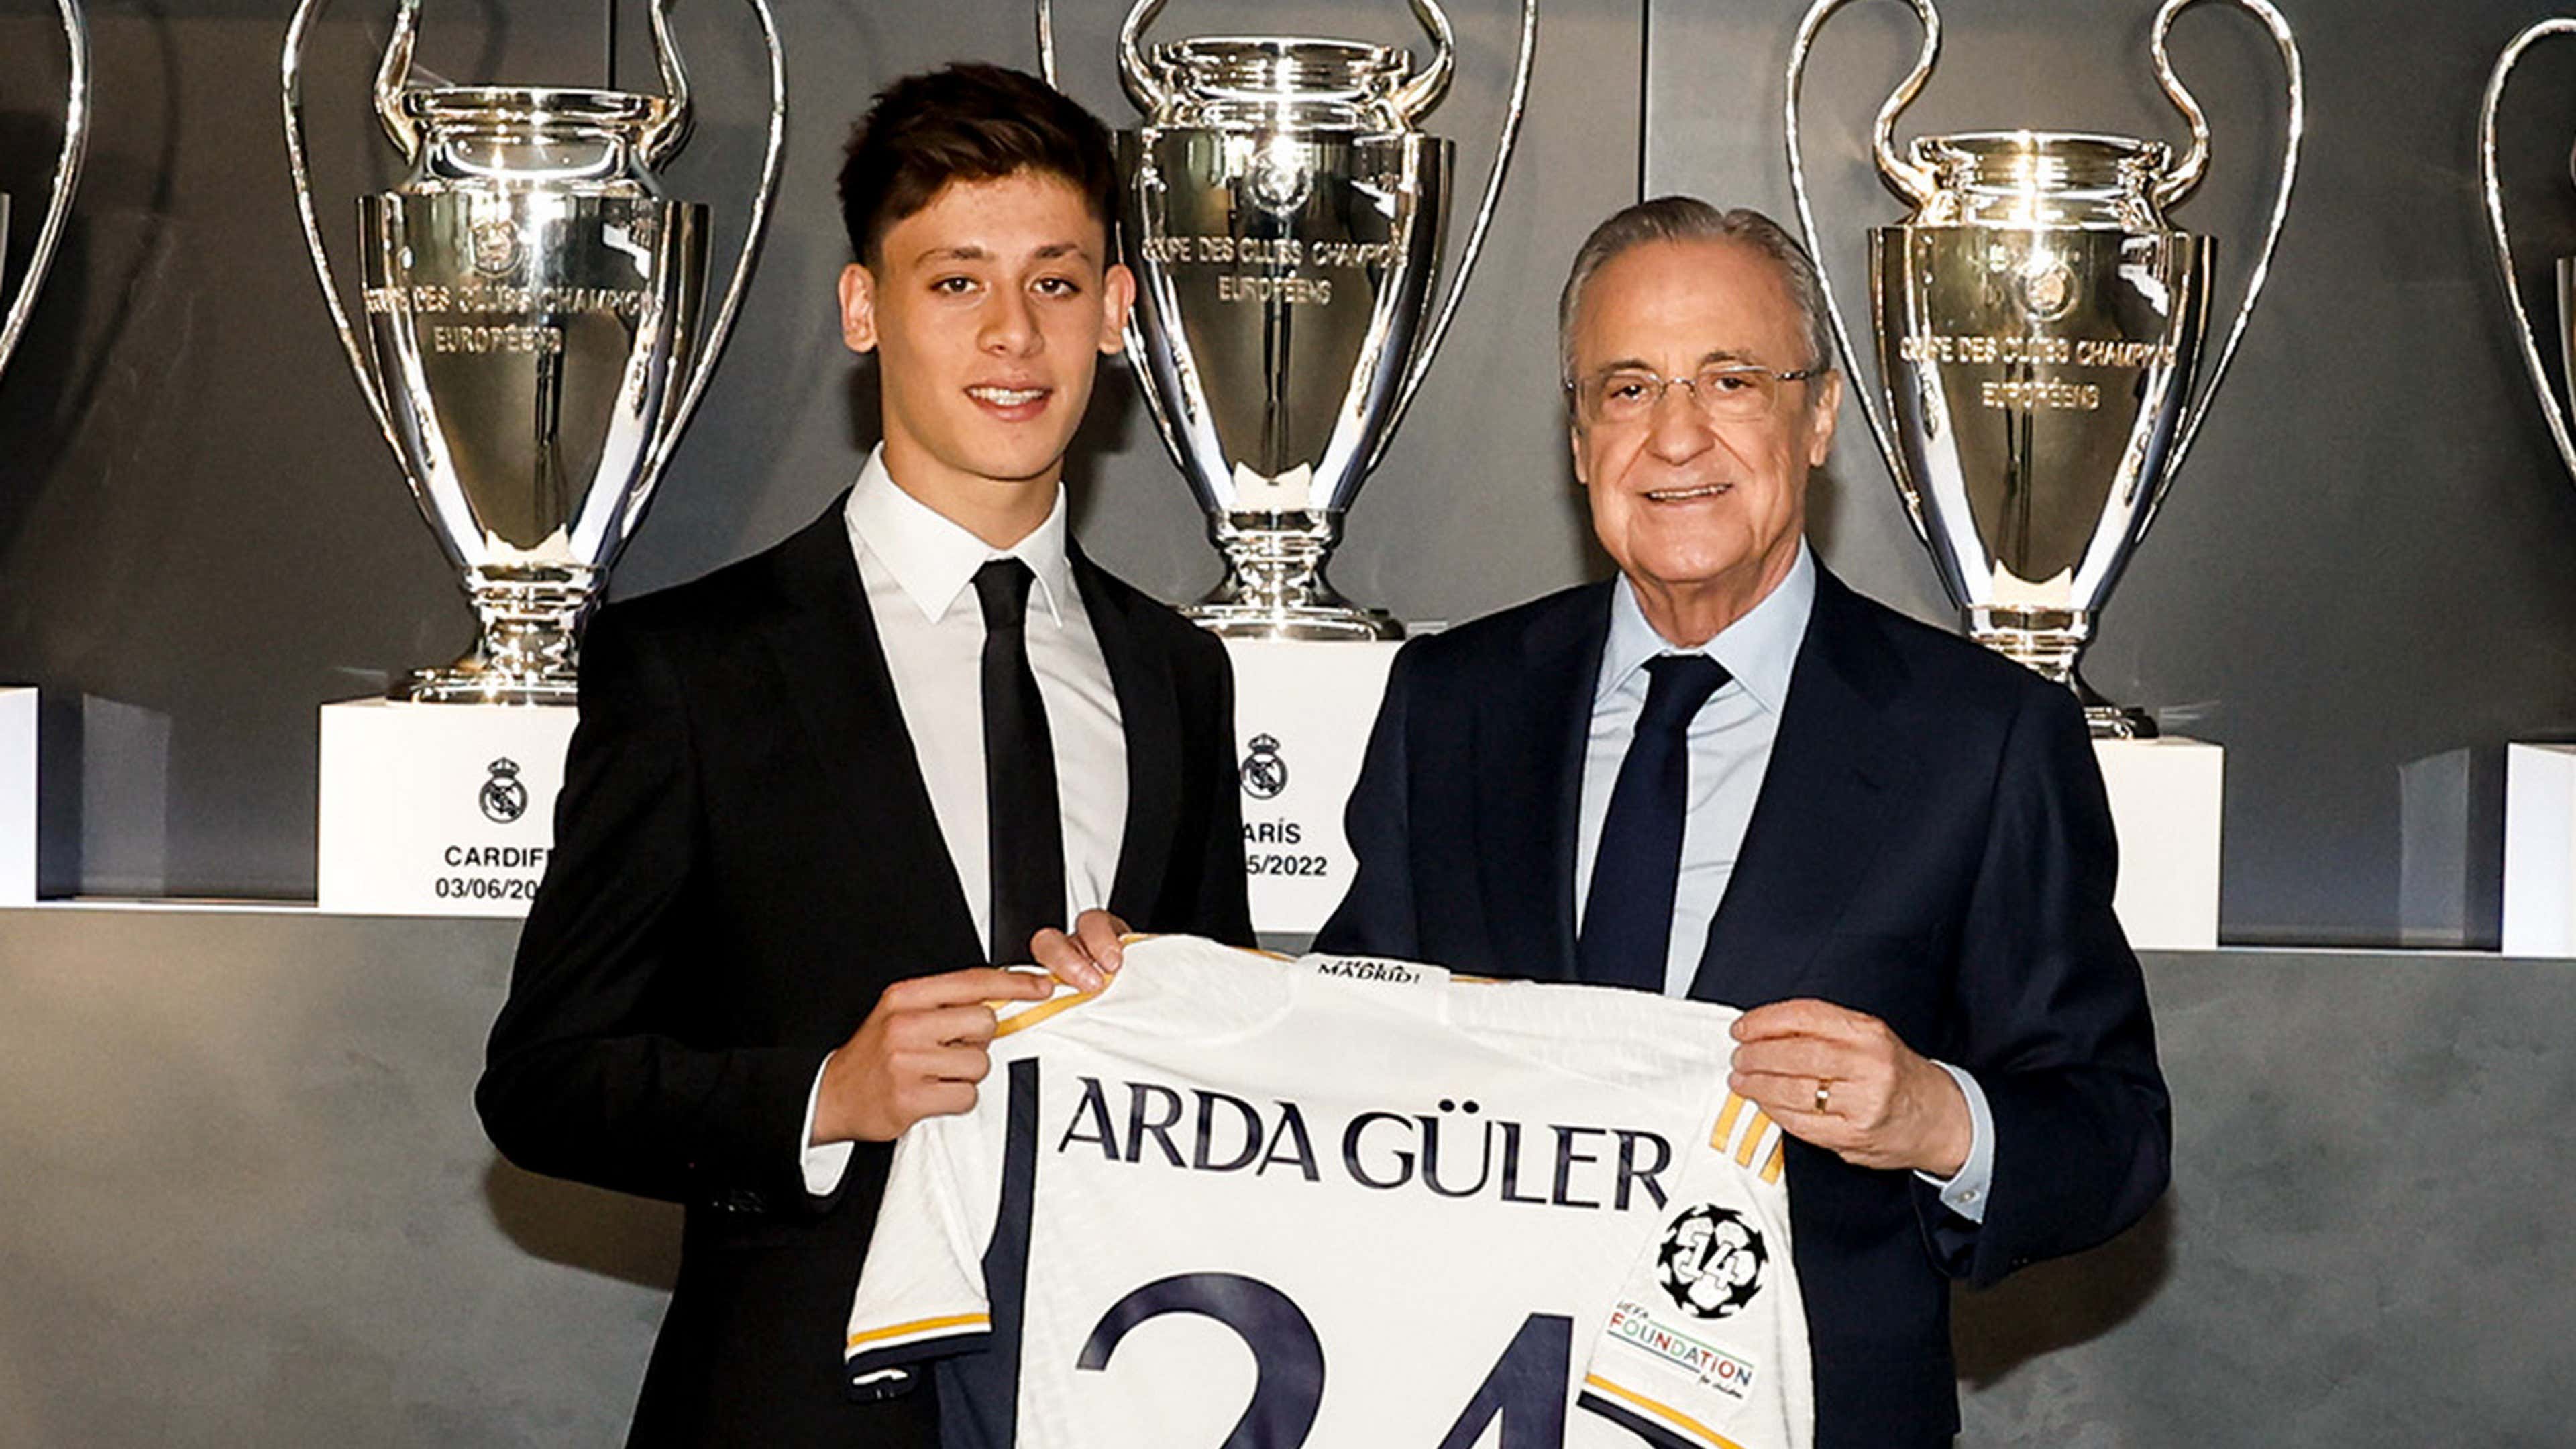 Arda Guler Real Madrid Florentino Perez